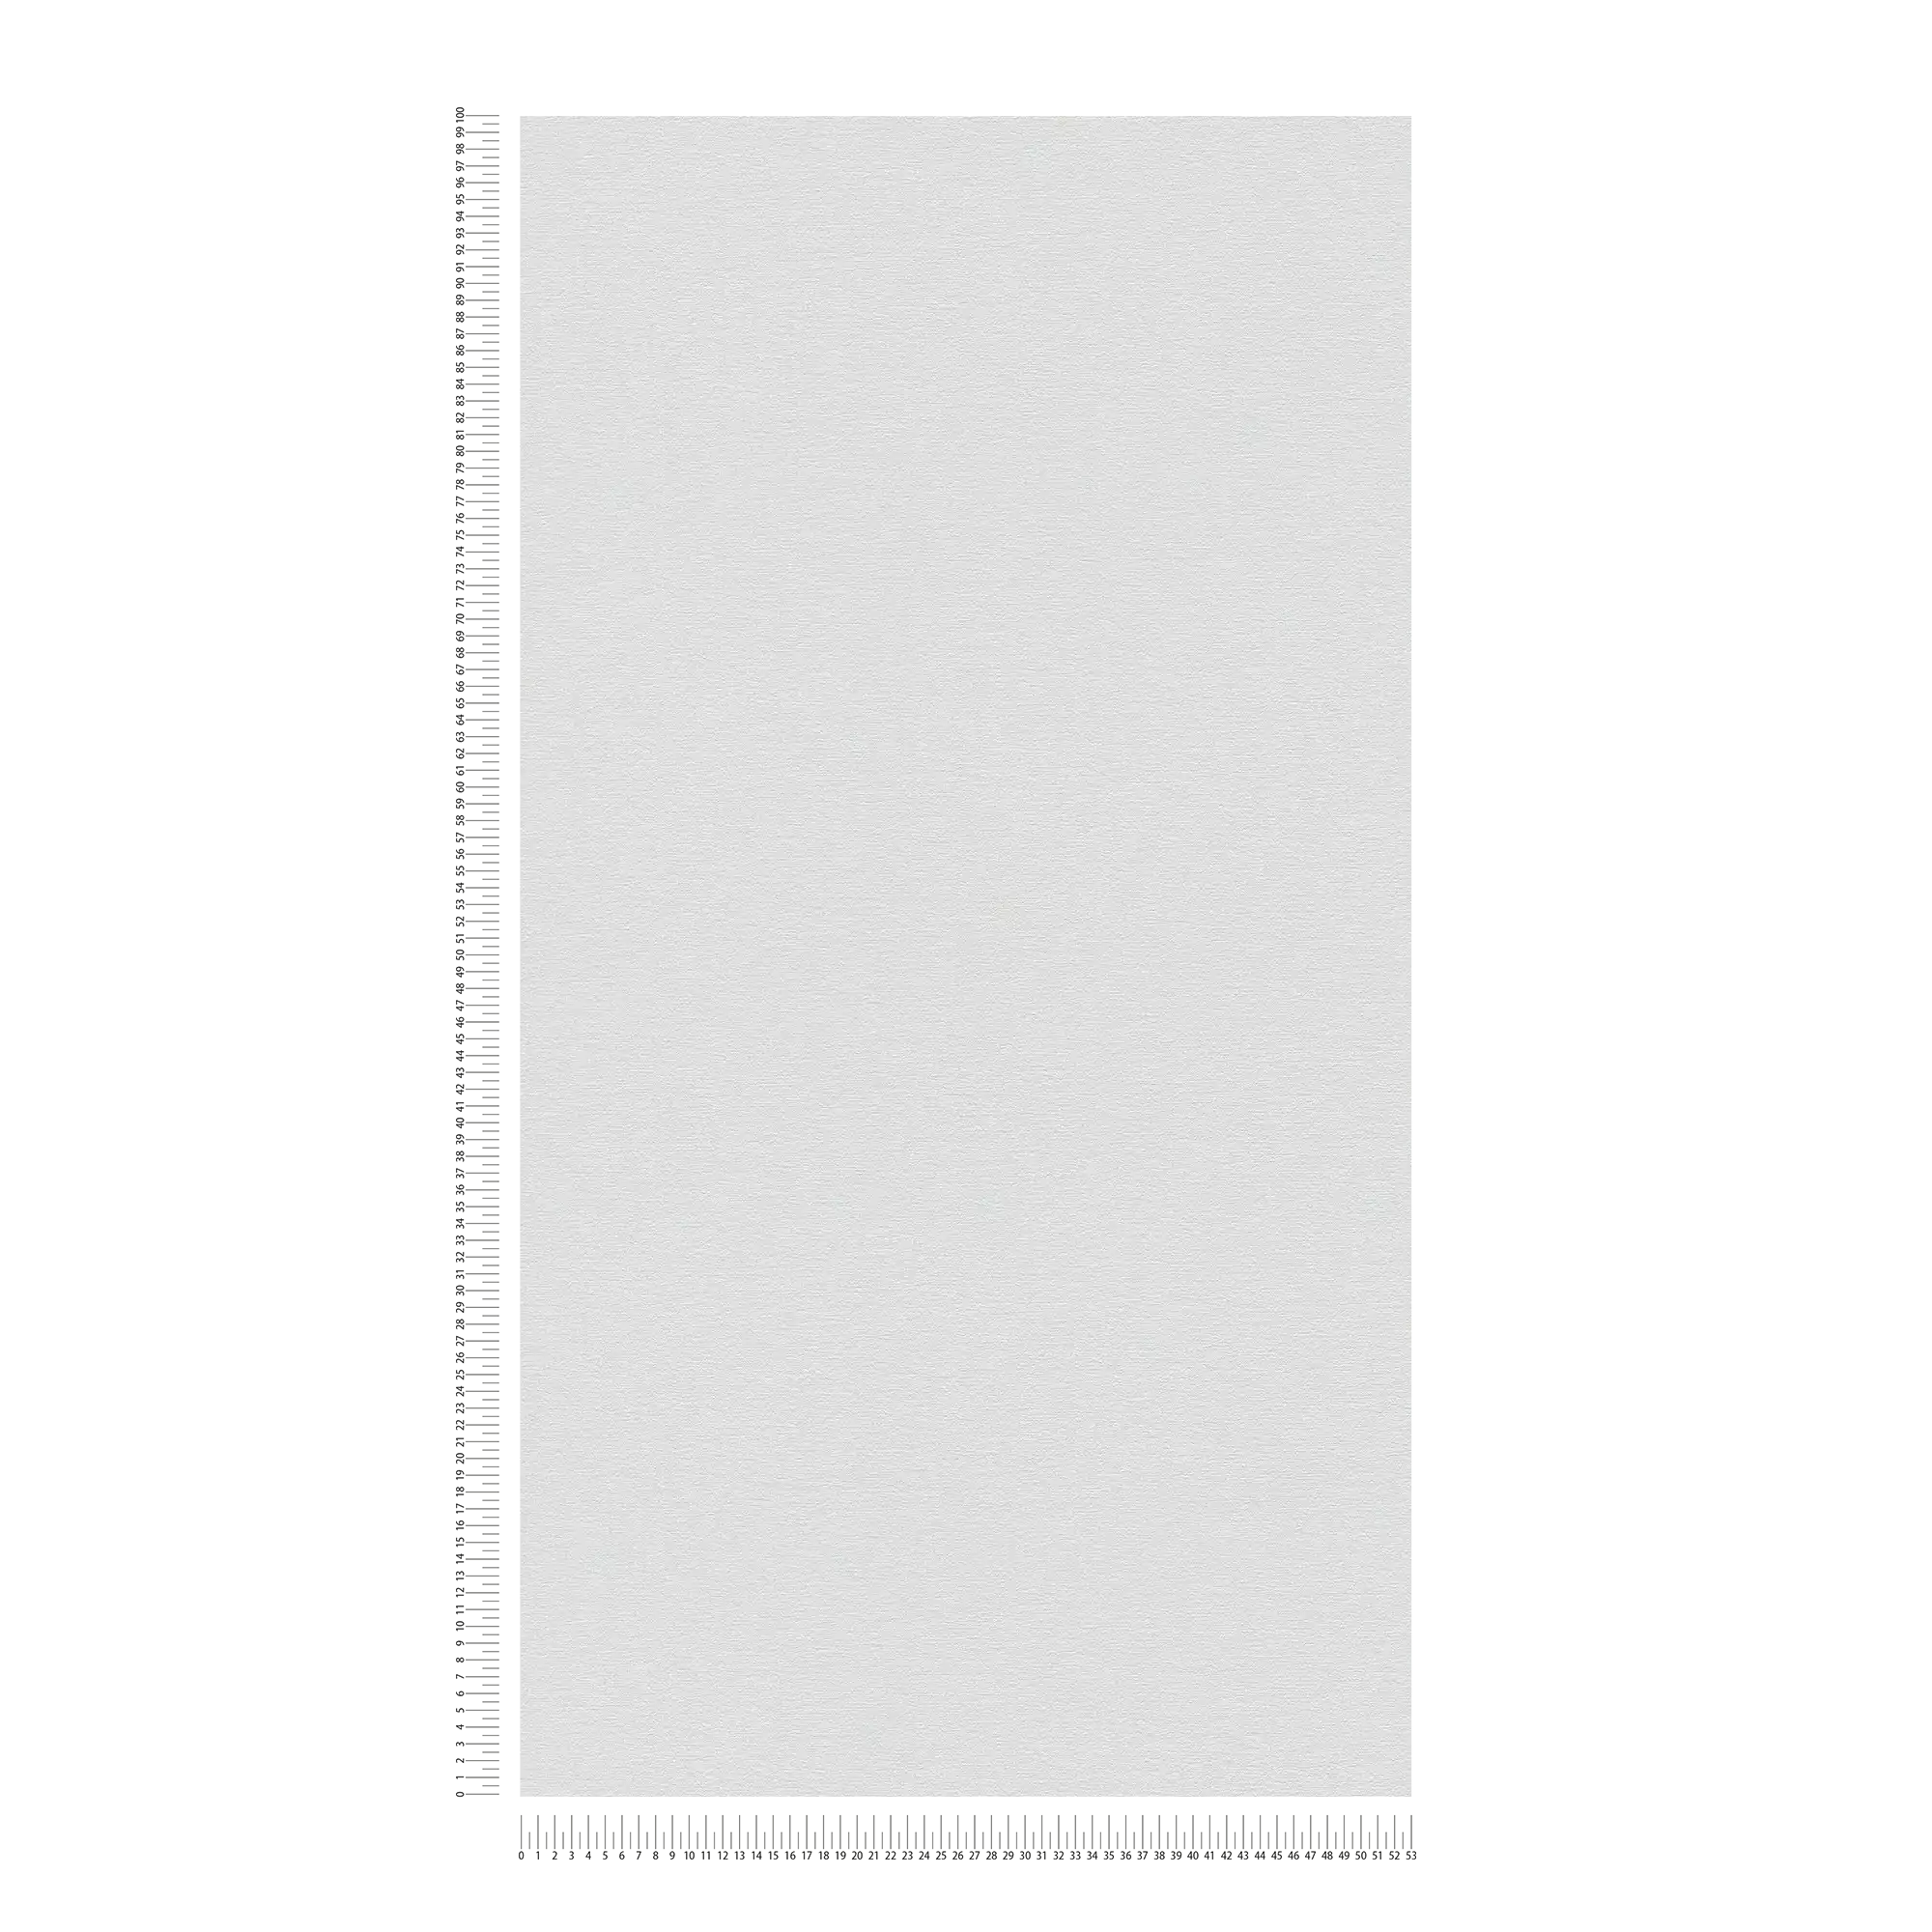             papier peint en papier uni légèrement structuré, aspect mat - blanc
        